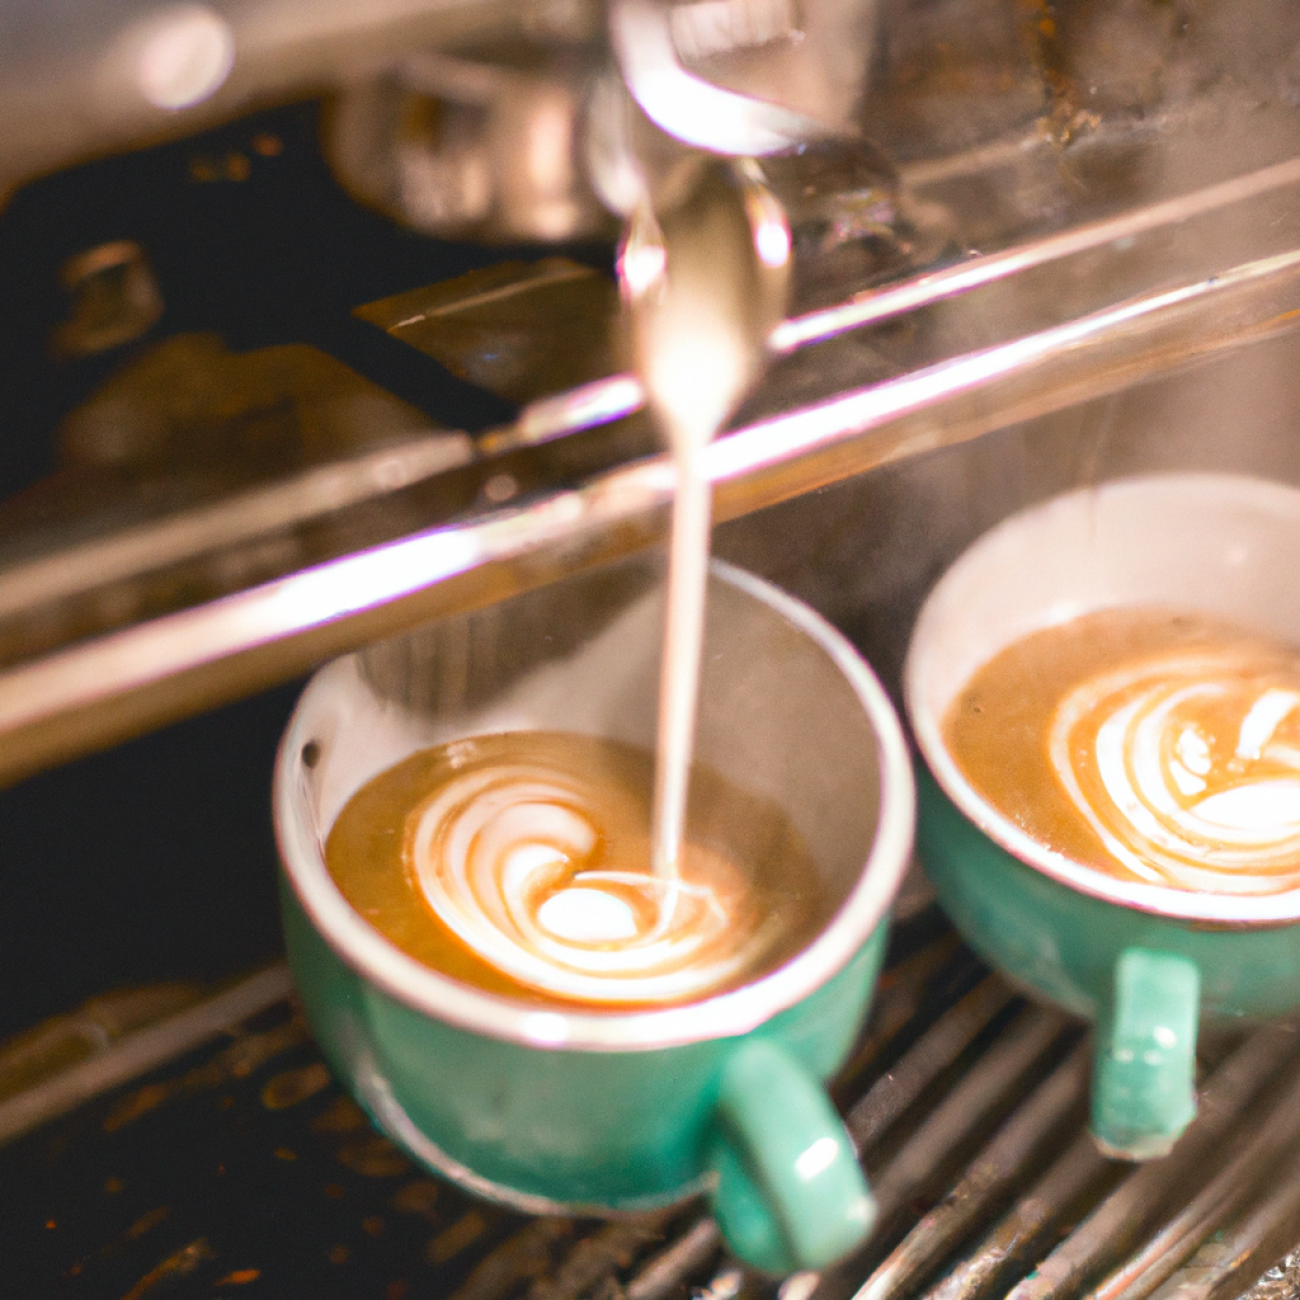 8. Double B Coffee & Tea: Profesionální přístup a výjimečná‌ chut' kávy